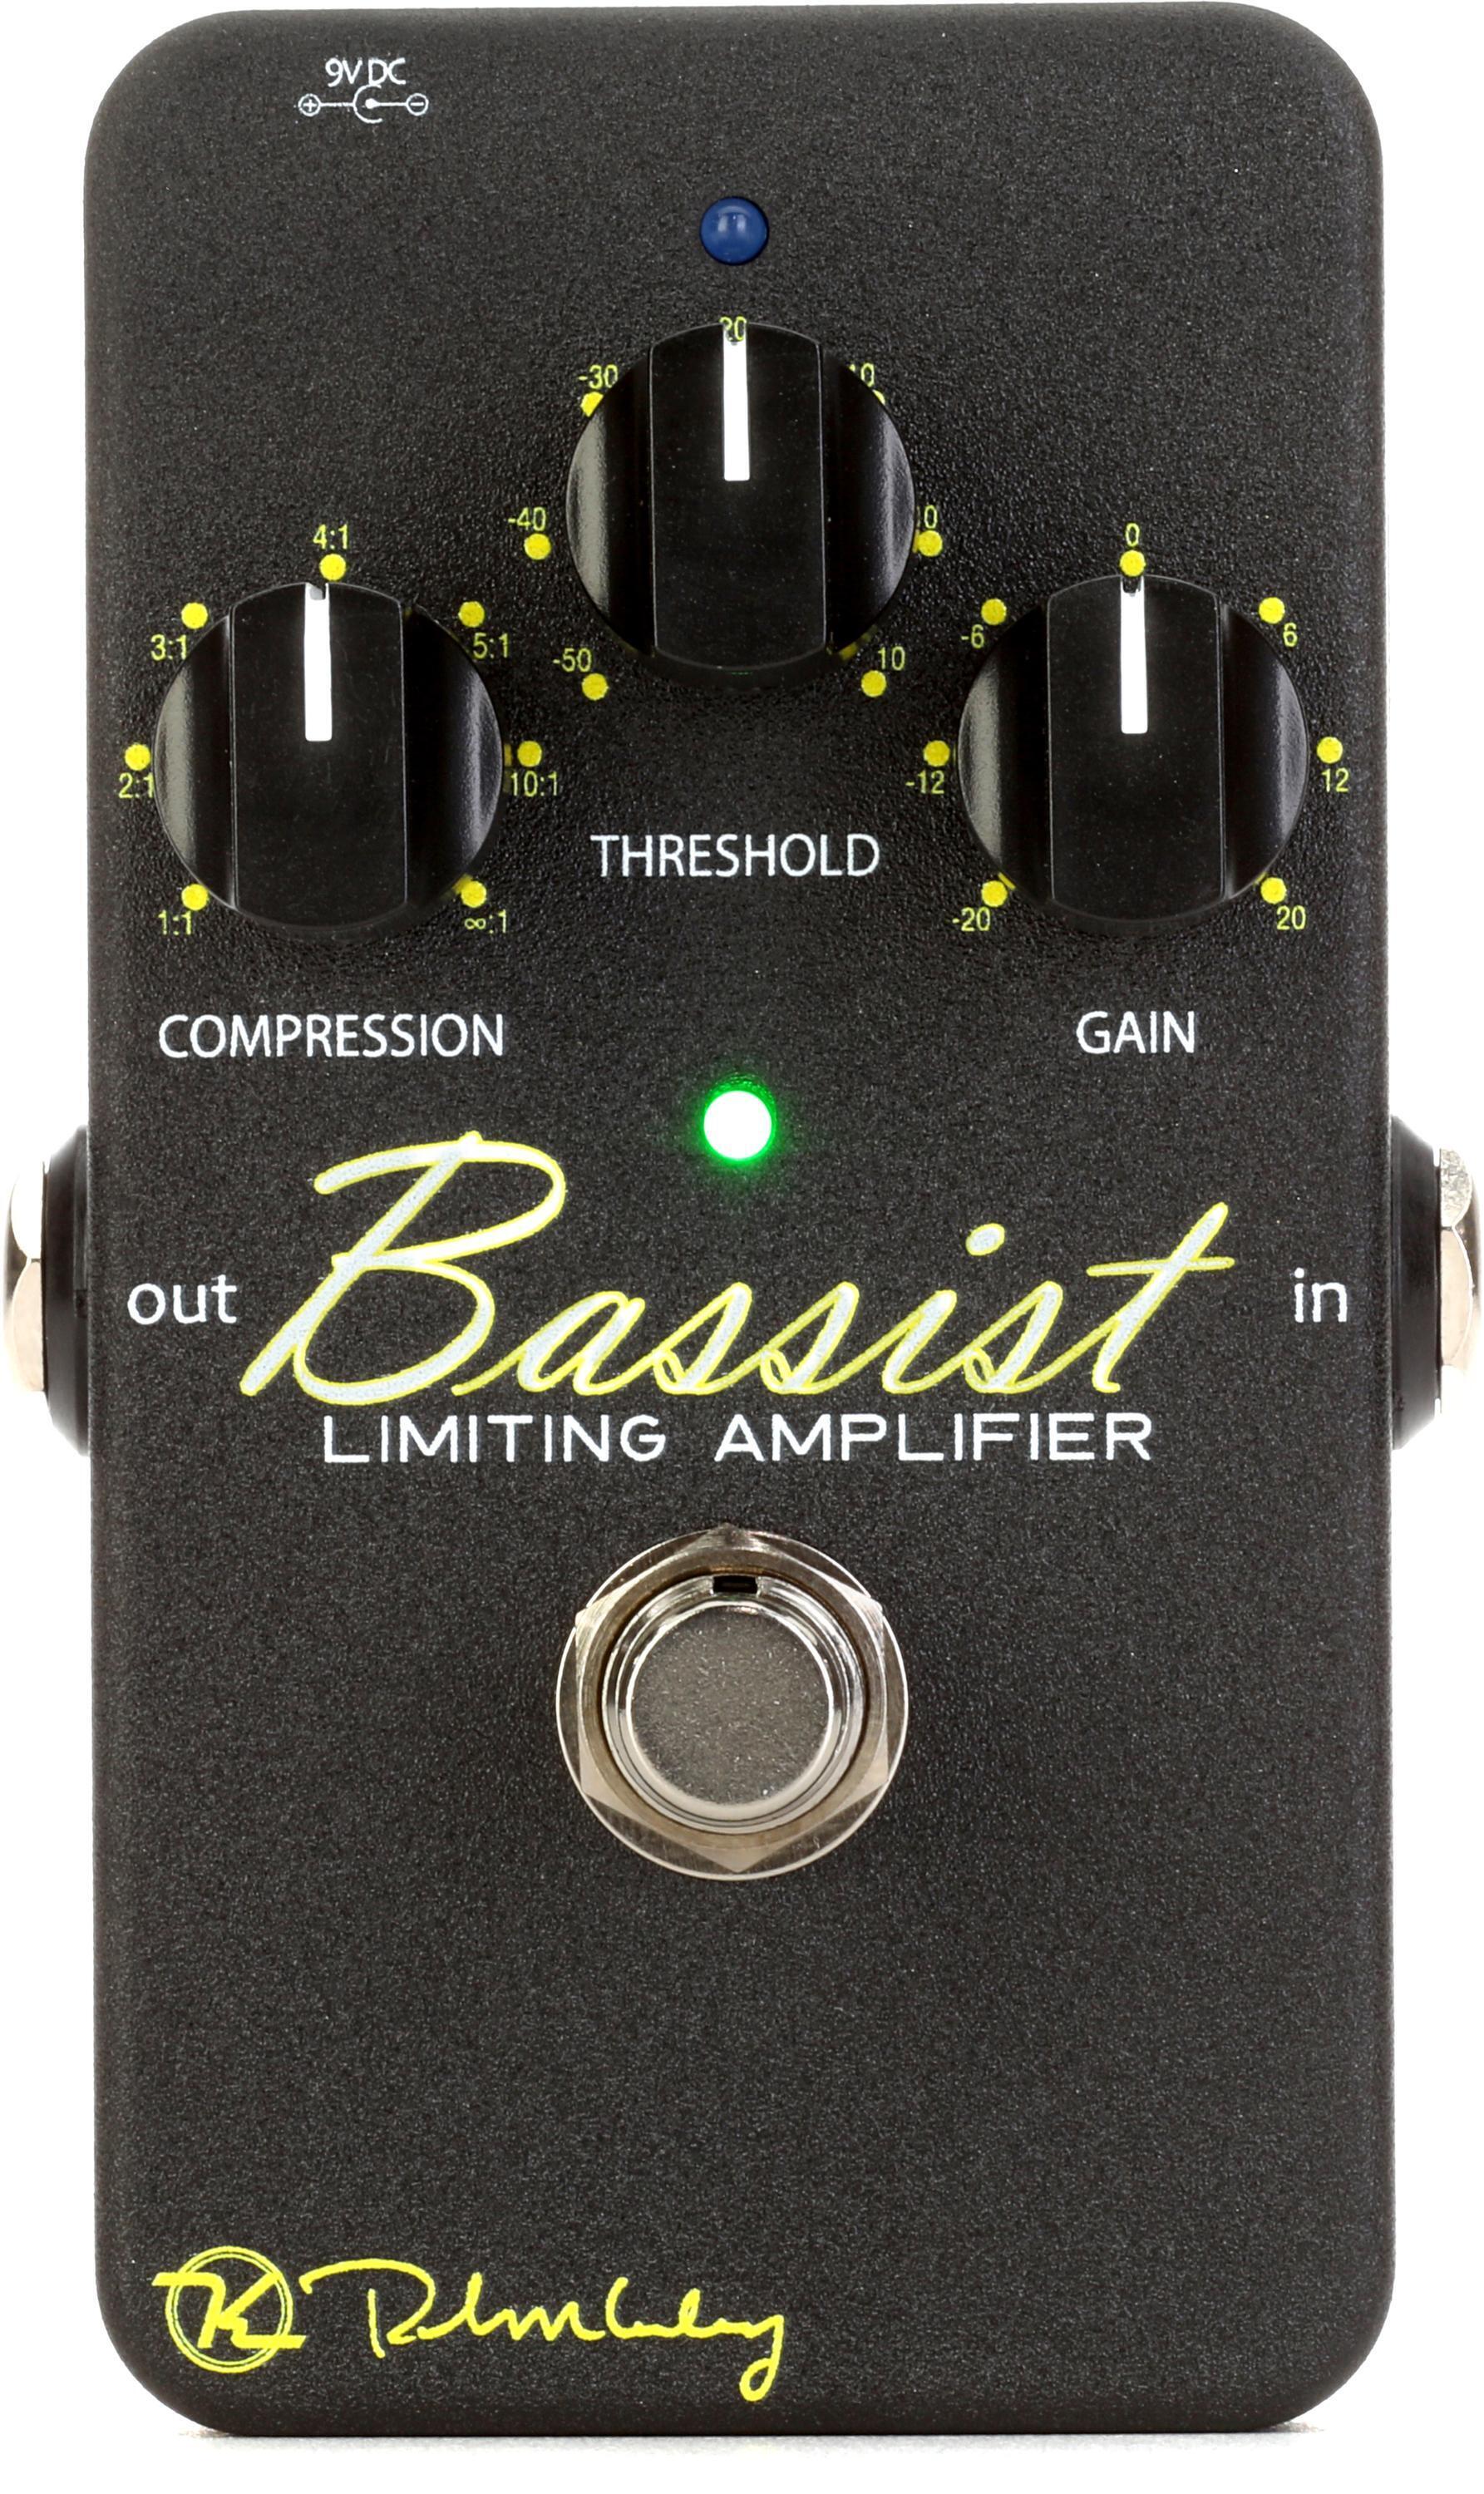 Bundled Item: Keeley Bassist Limiting Amplifier Bass Compressor Pedal